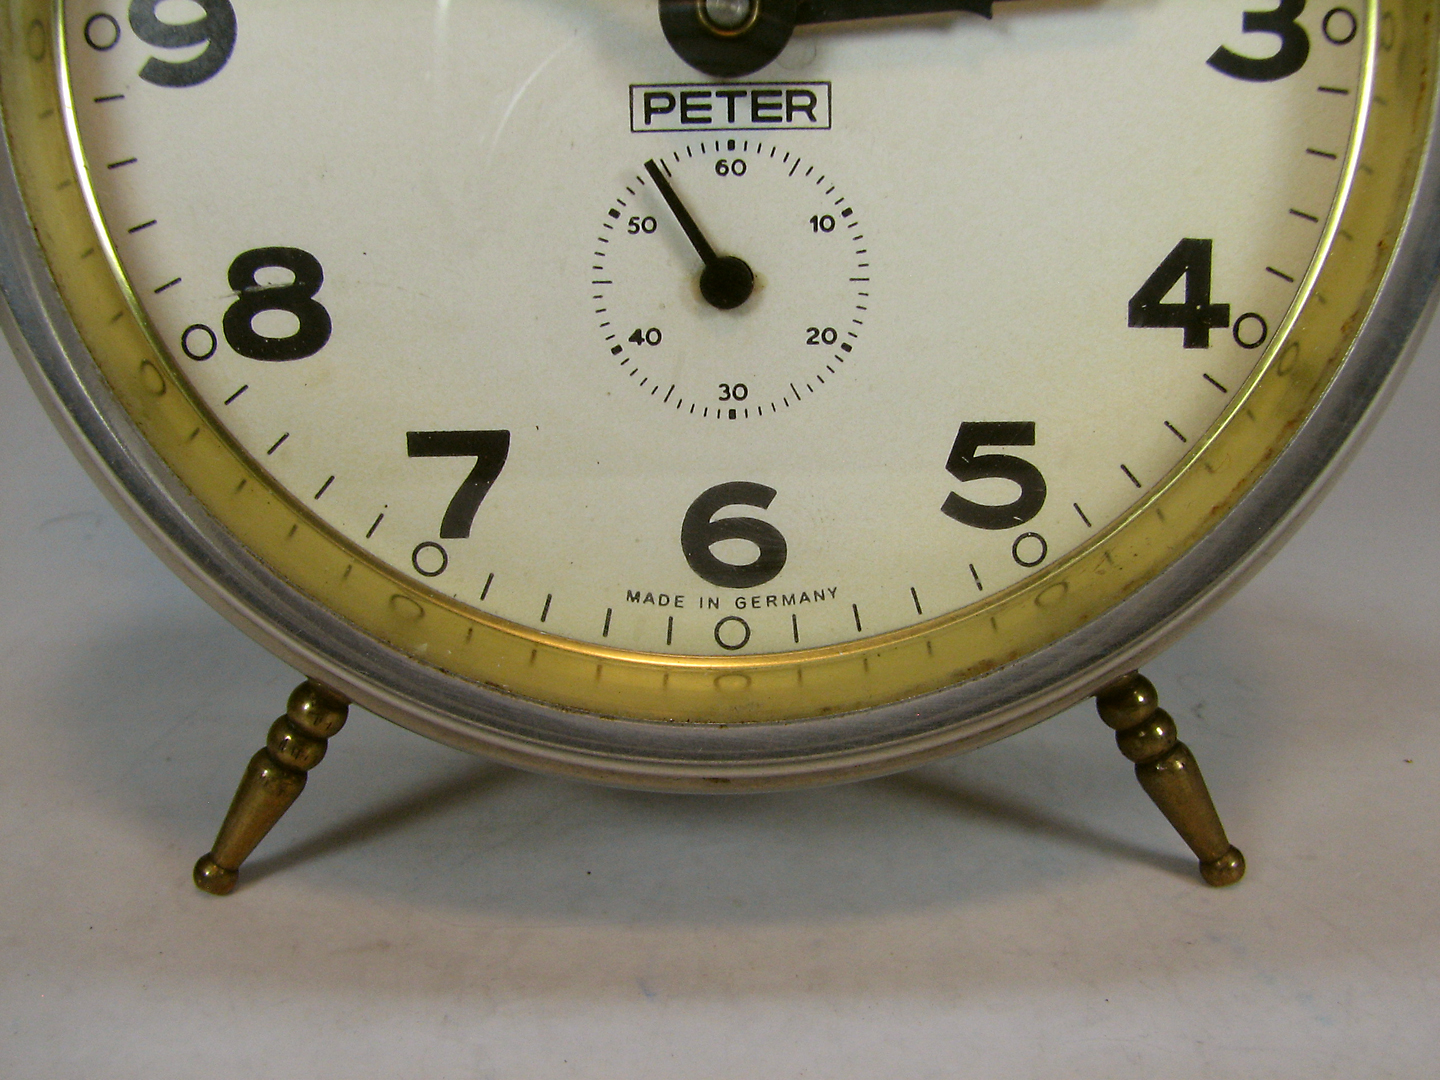 ساعت قدیمی سه ستاره آلمانی پیتر PETER